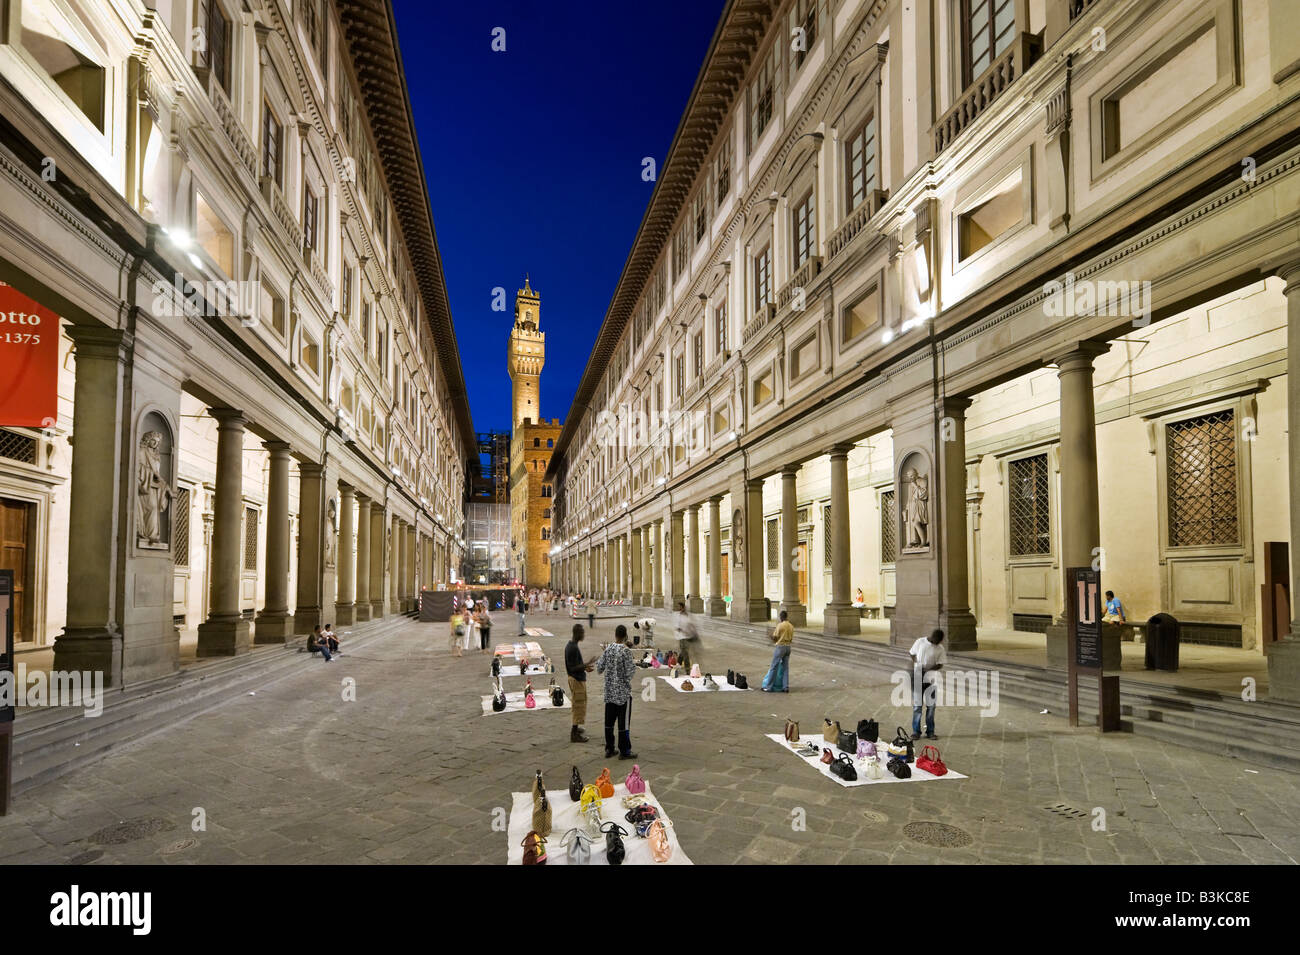 Illegale Straßenverkäufer ausserhalb der Uffizi Galerie in der Nacht mit dem Palazzo Vecchio in der Ferne, Florenz, Toskana, Italien Stockfoto